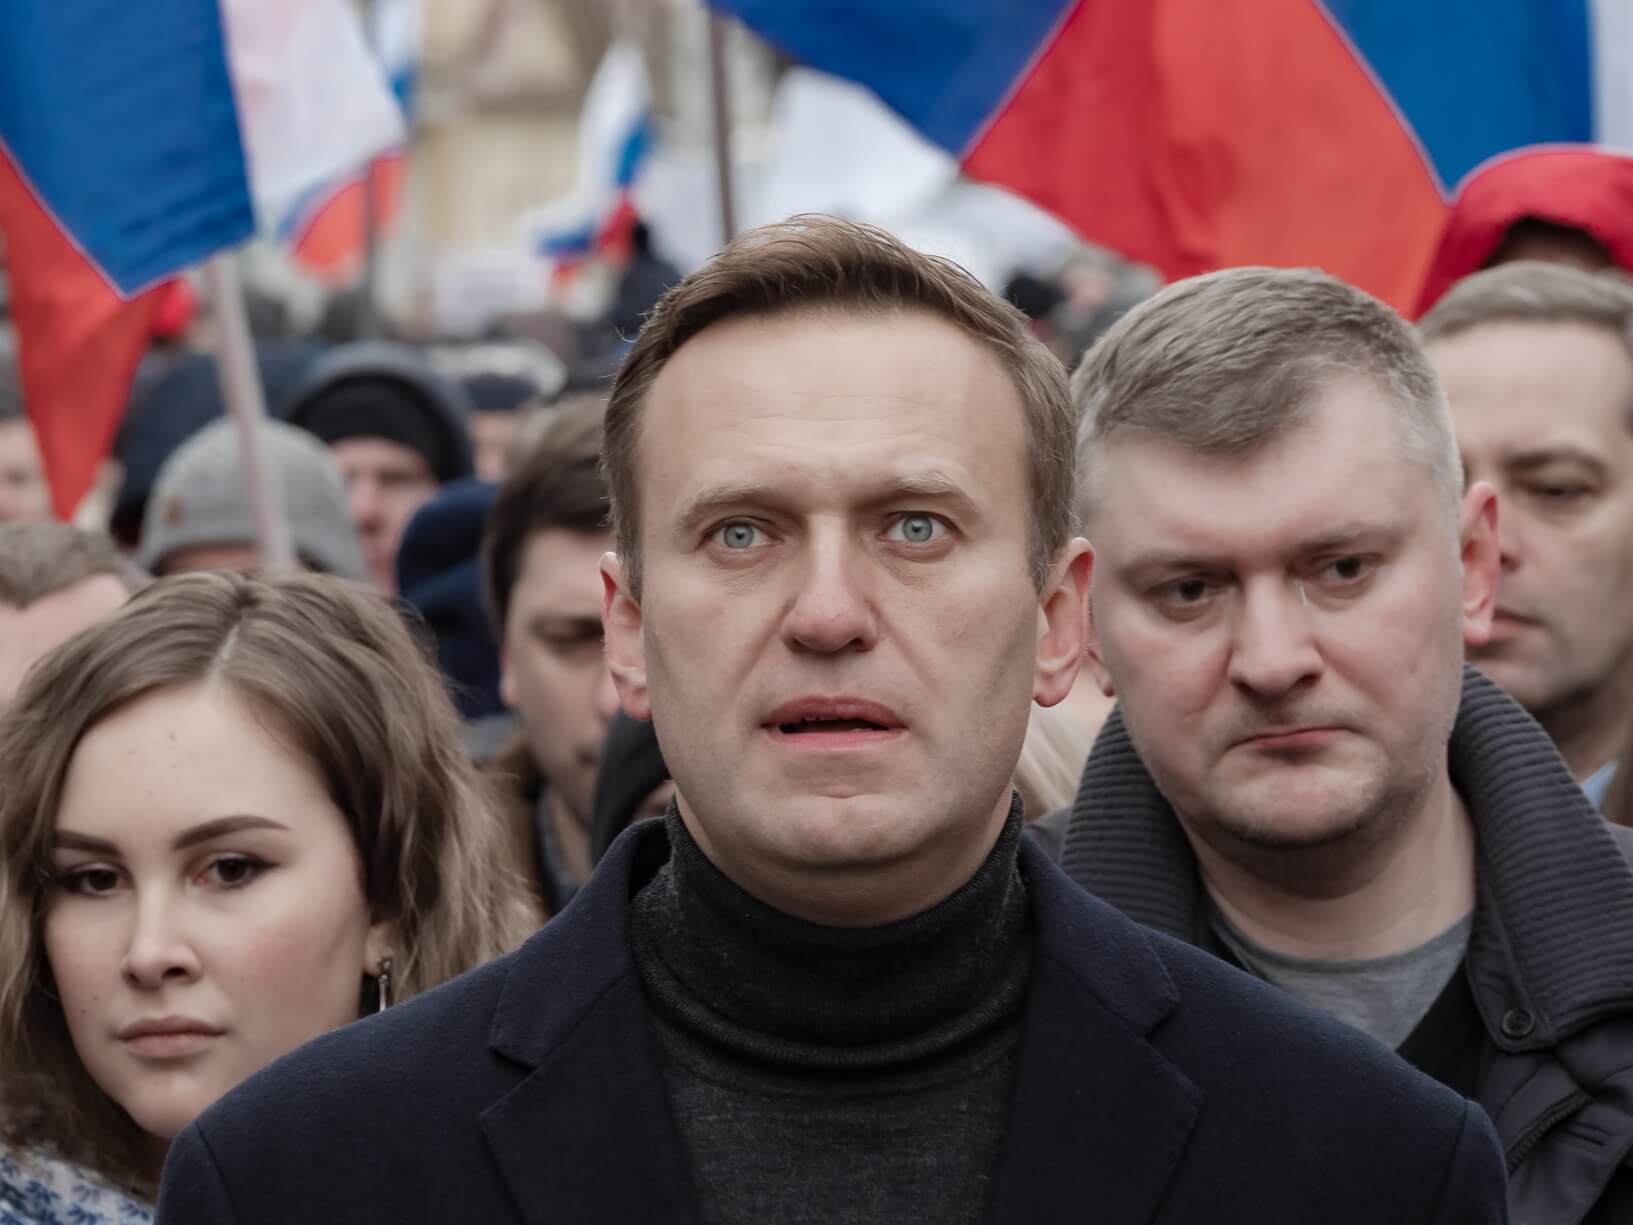 De Russische oppositieleider Alexei Navalny in juli 2020. Michał Siergiejevicz - Flickr